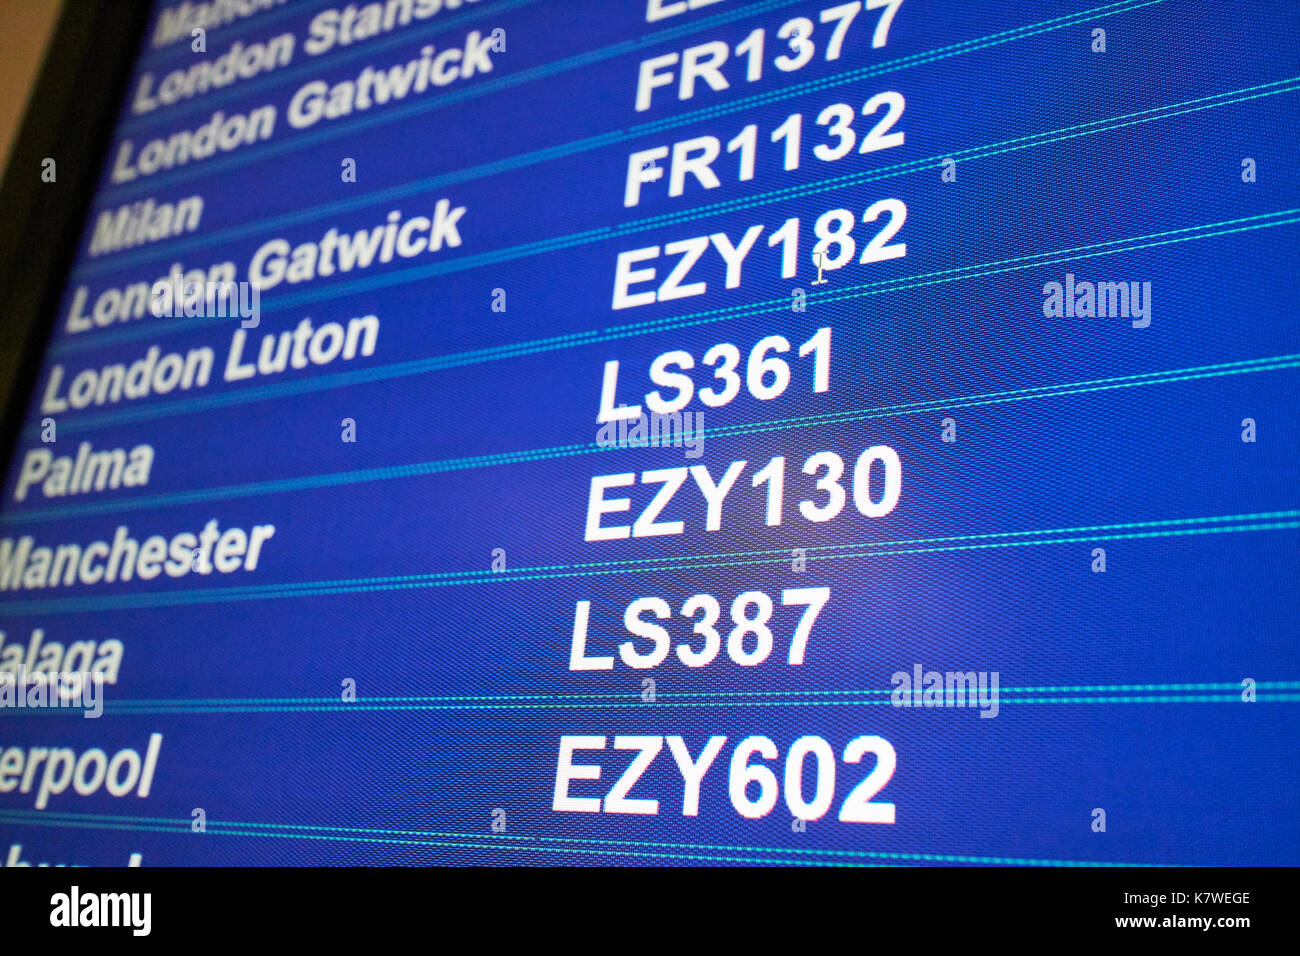 Flughafen Fluginformationen Bildschirm mit Reiseziele Low Cost Airline Codes für Ryanair und Easyjet Jet2 Stockfoto